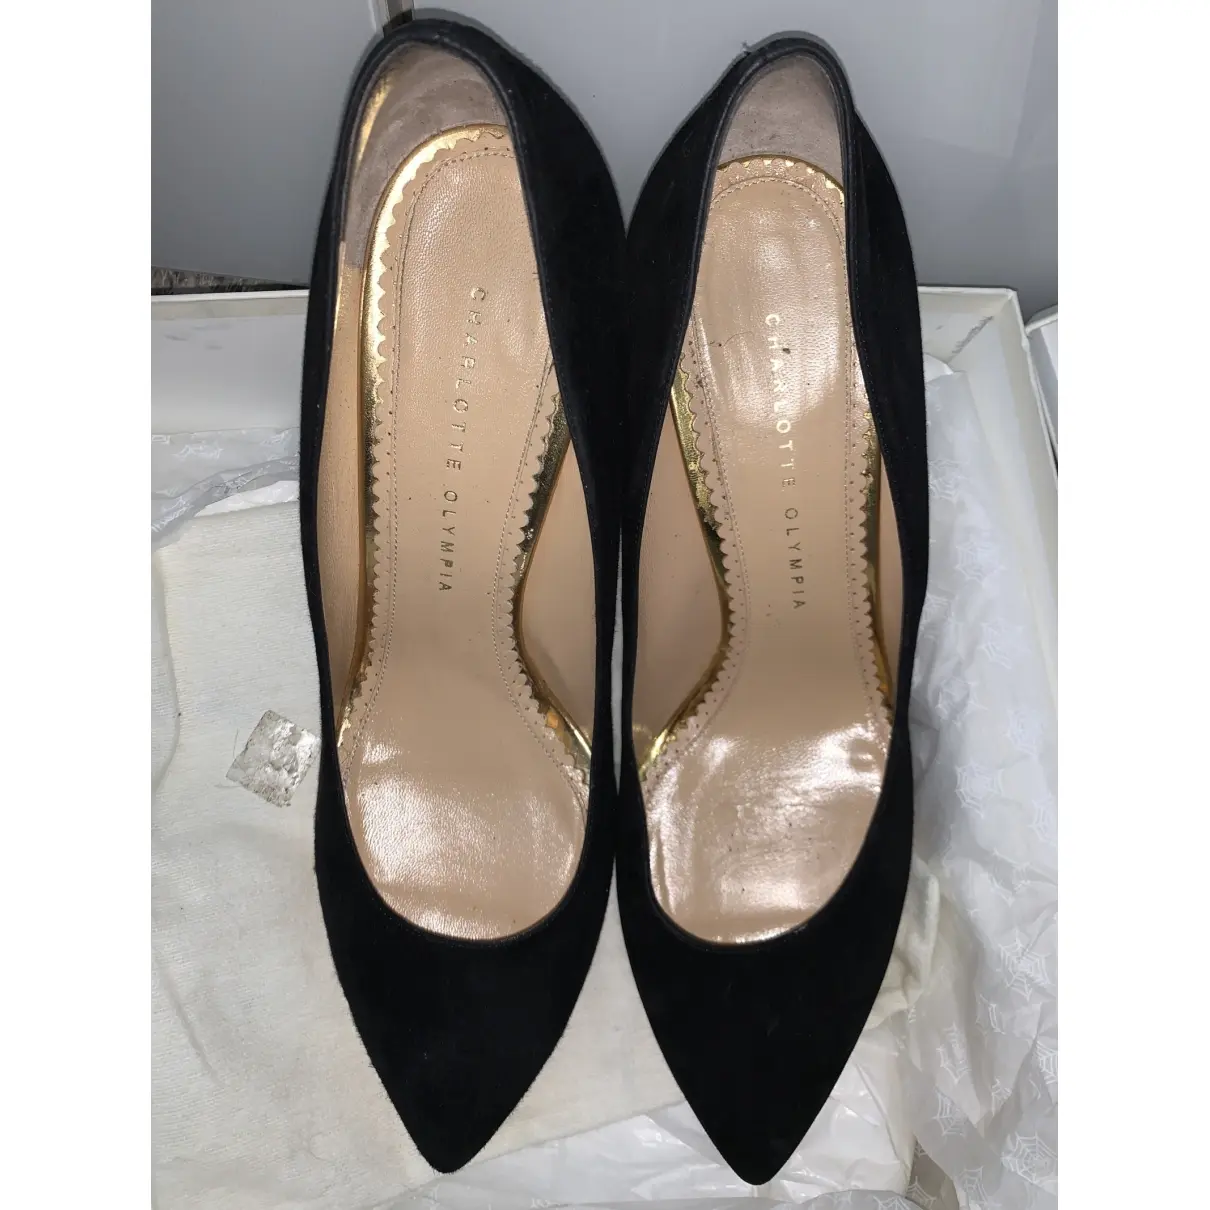 Buy Charlotte Olympia Debbie heels online